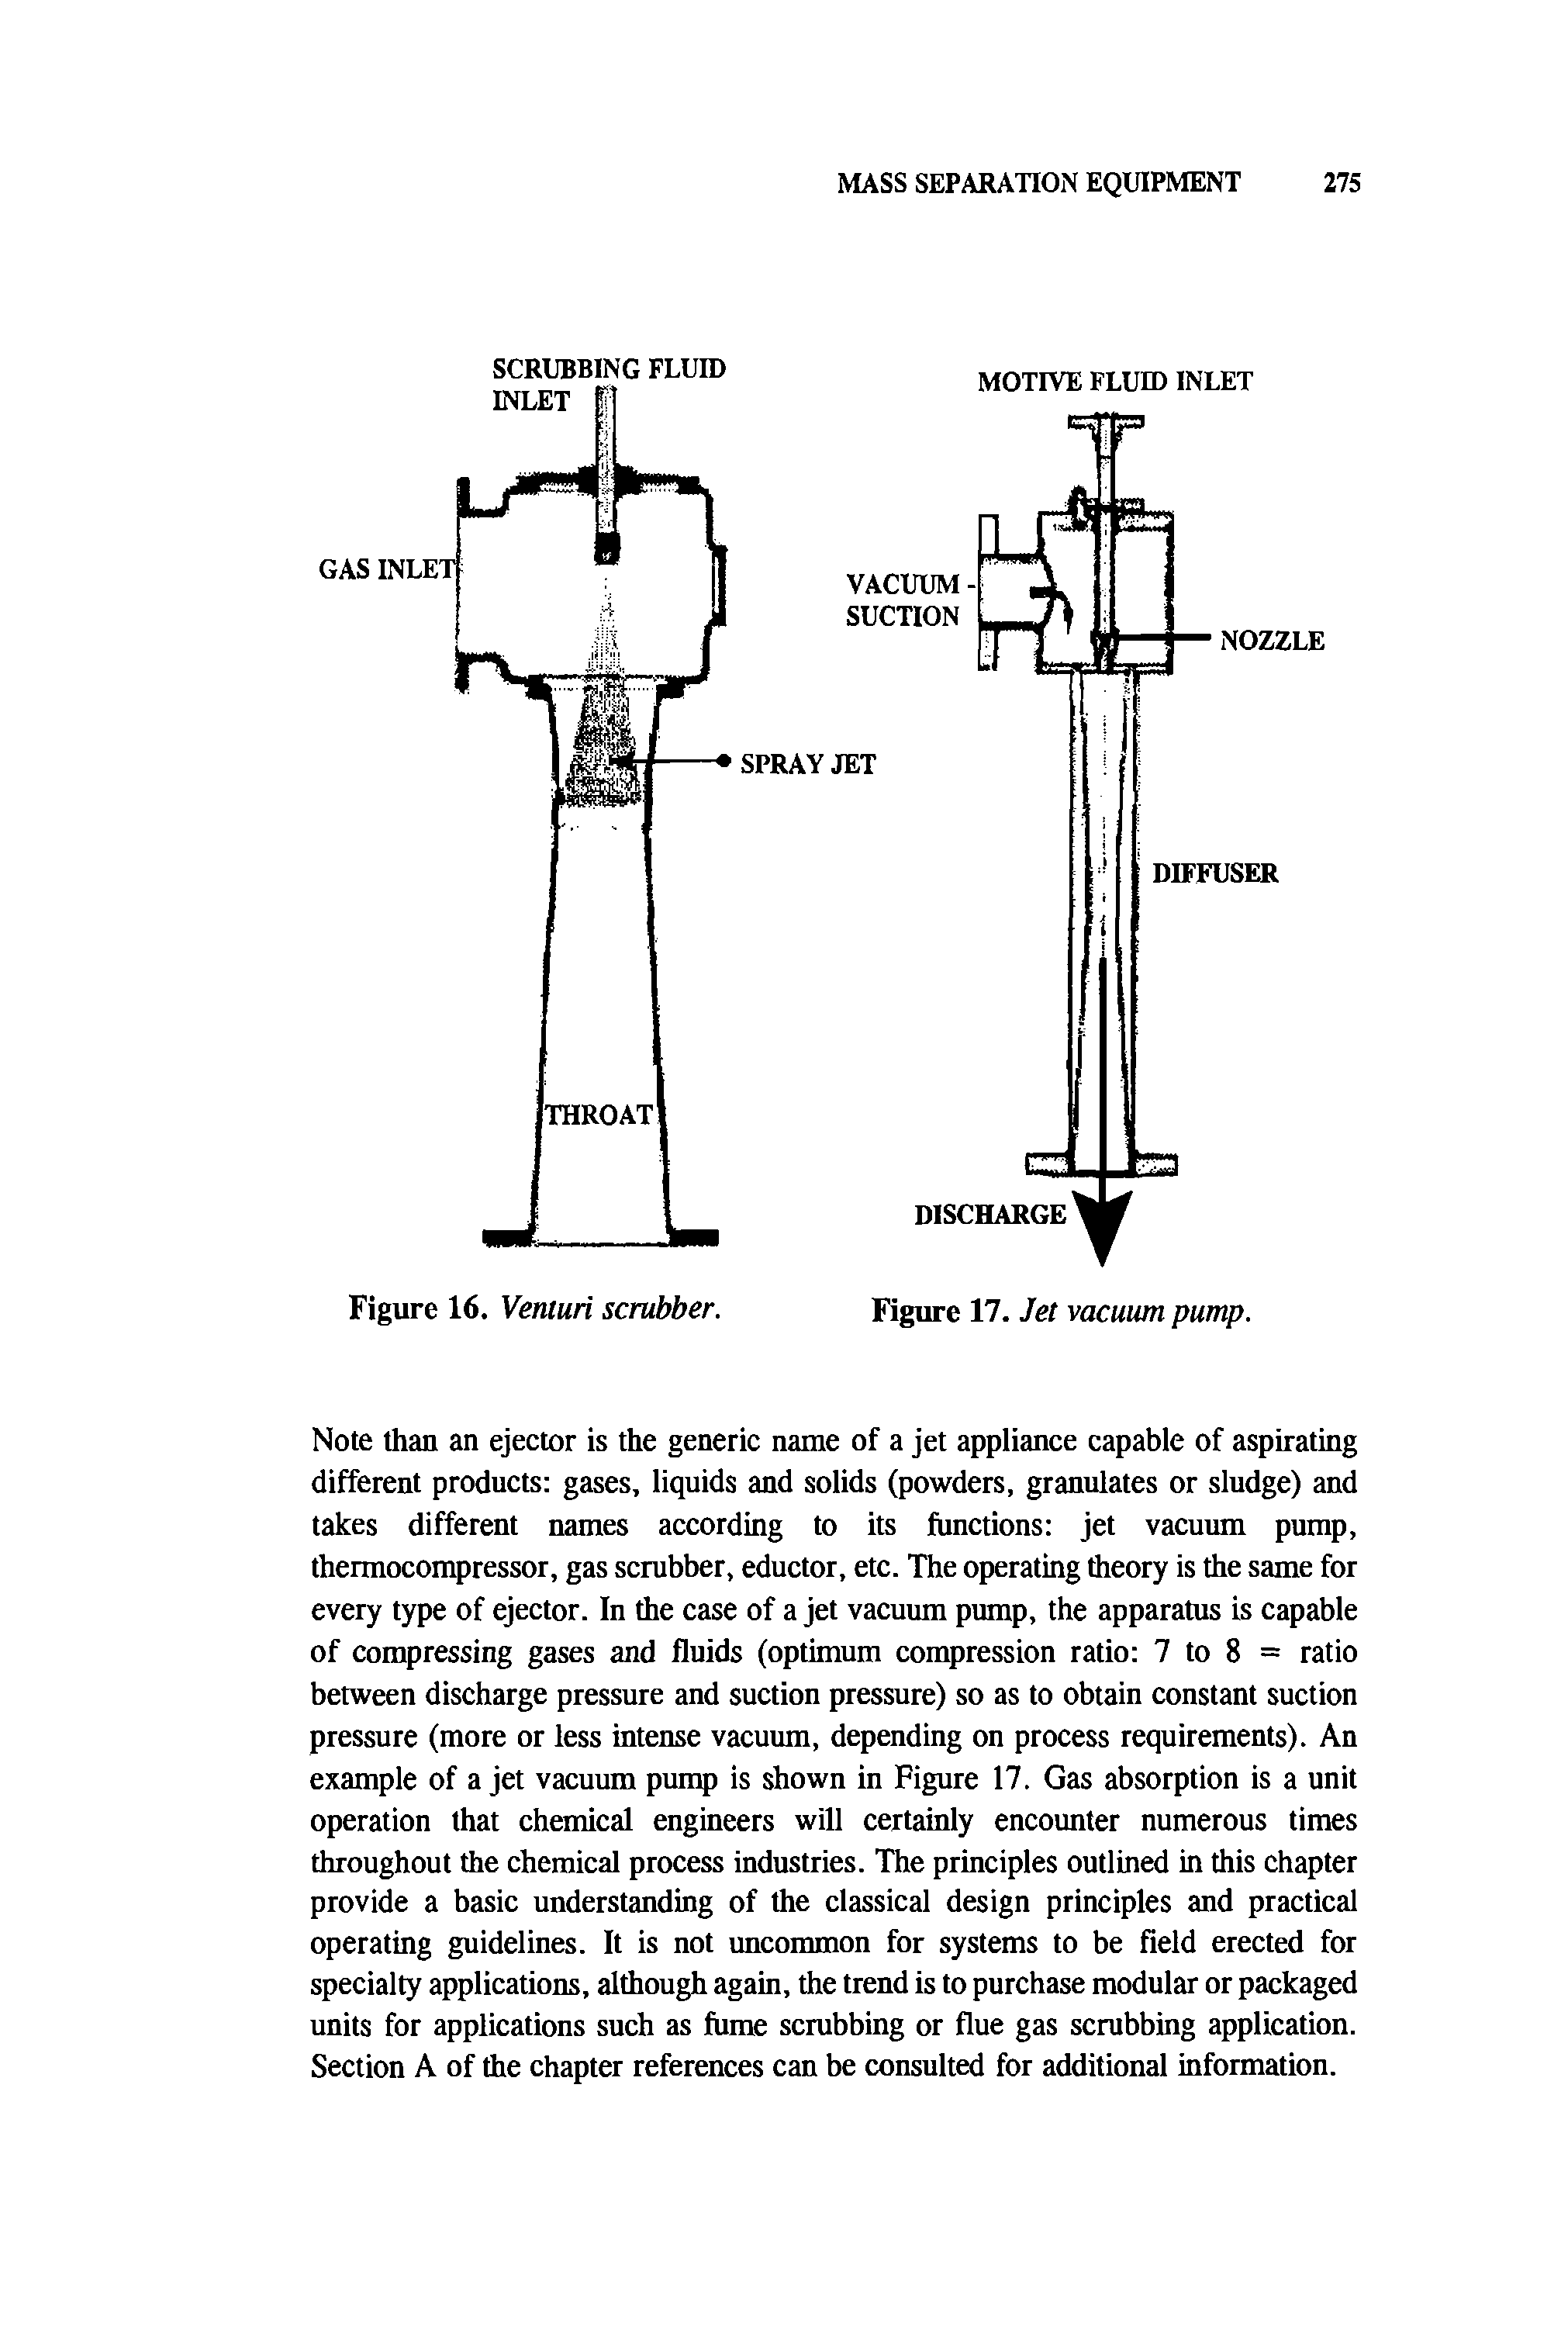 Figure 16. Venturi scrubber. Figure 17. Jet vacuum pump.